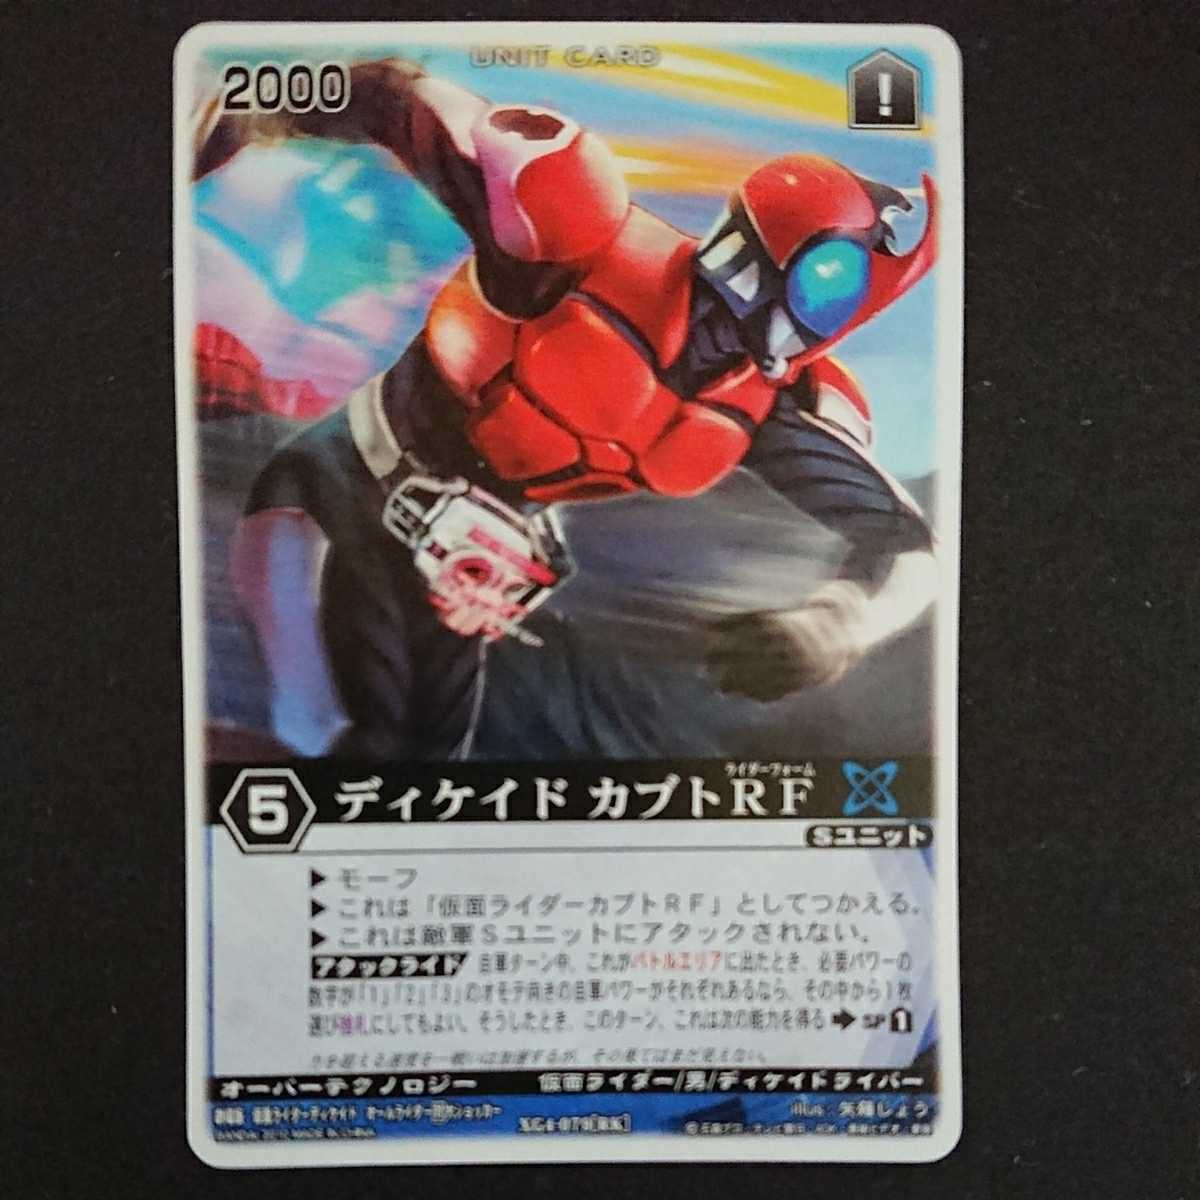 [ti Kei do Kabuto RF( theater version Kamen Rider ti Kei do)] out of print Carddas Rangers Strike here only. ..... illustration use!